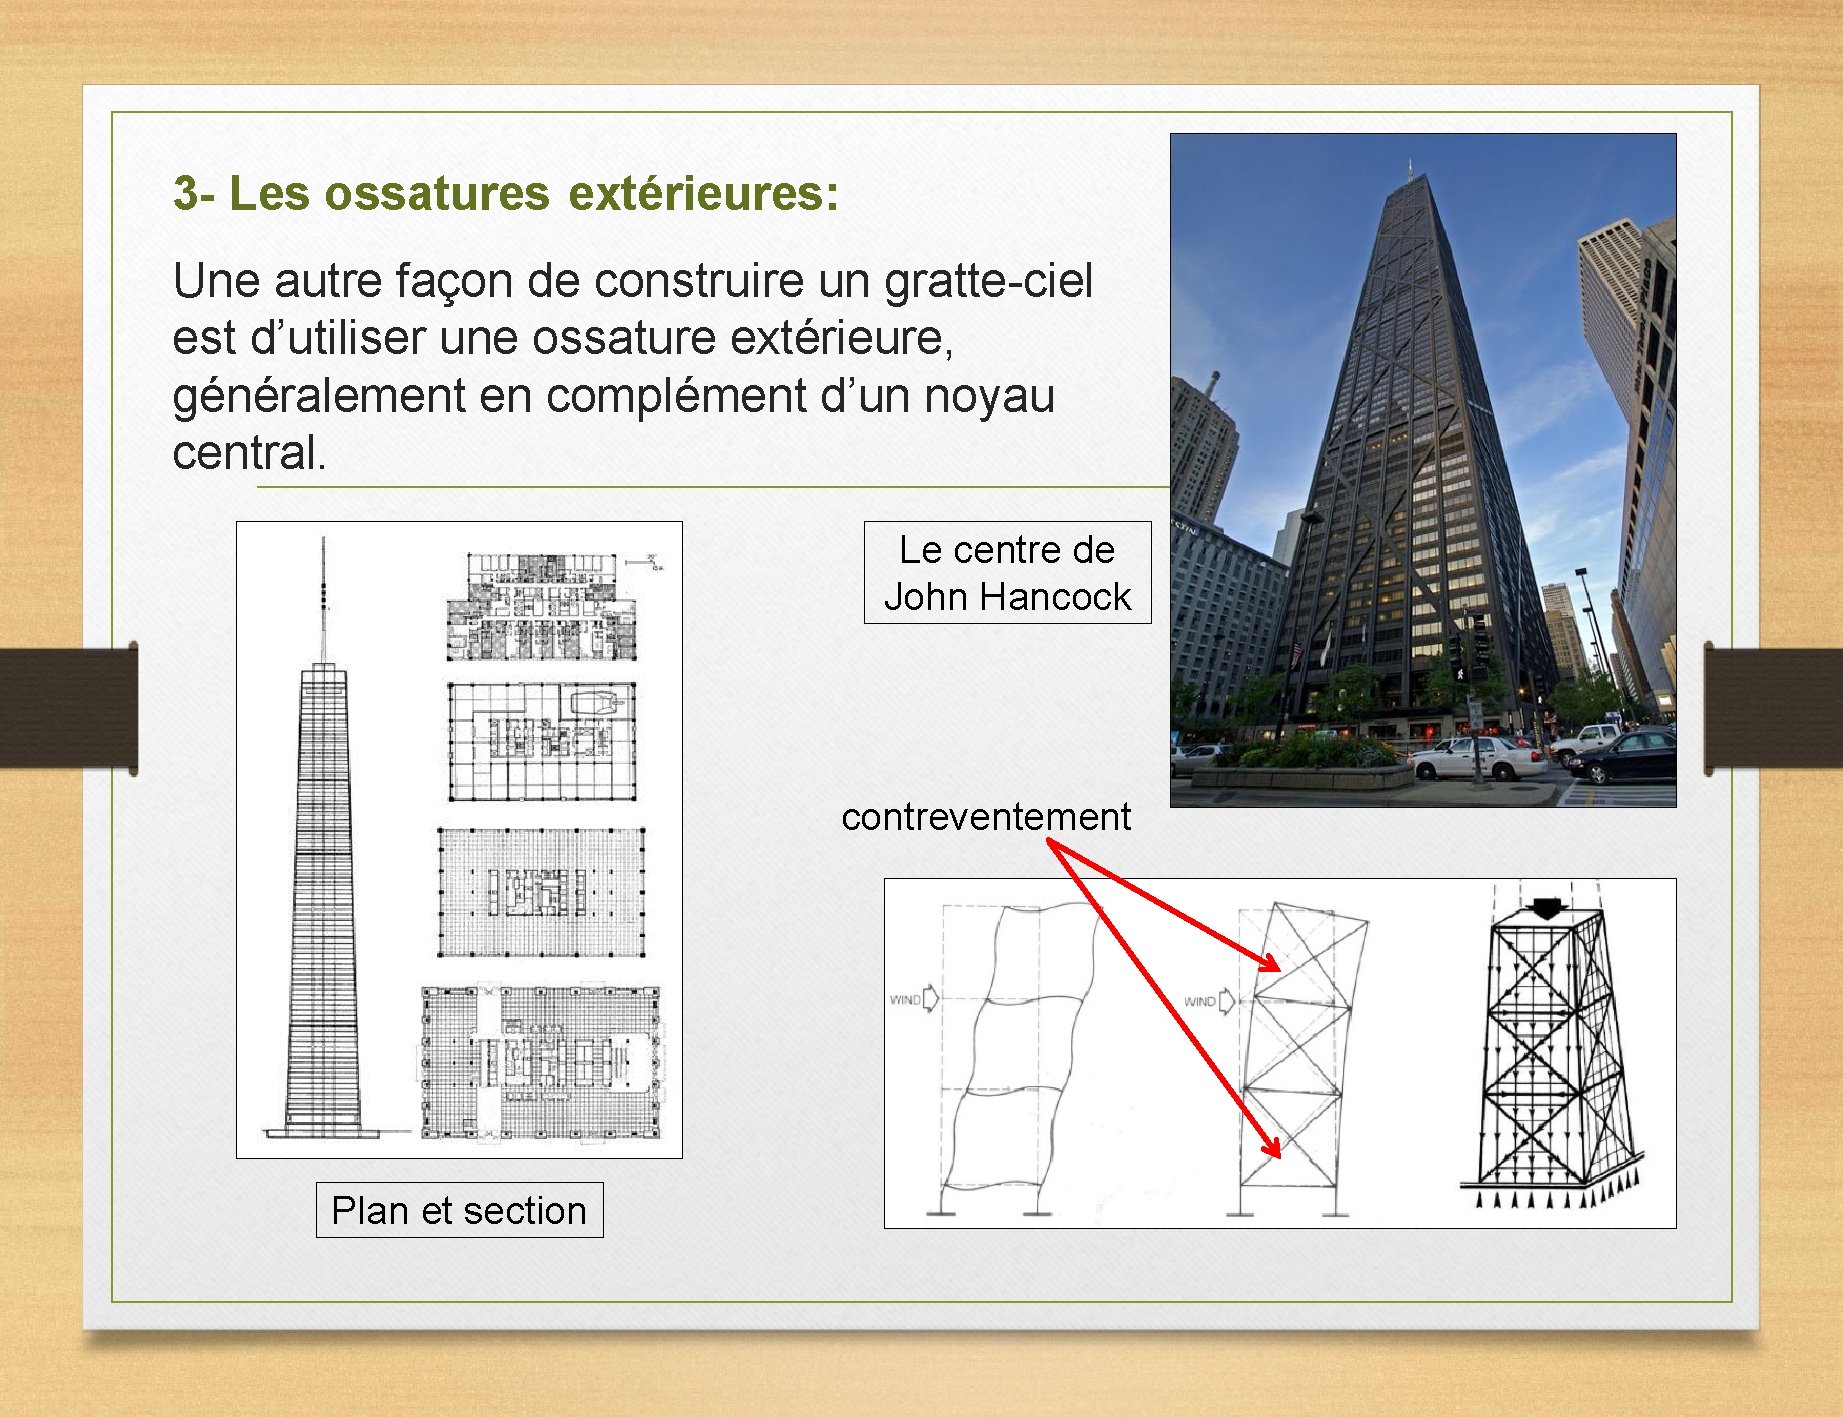 3 - Les ossatures extérieures: Une autre façon de construire un gratte-ciel est d’utiliser